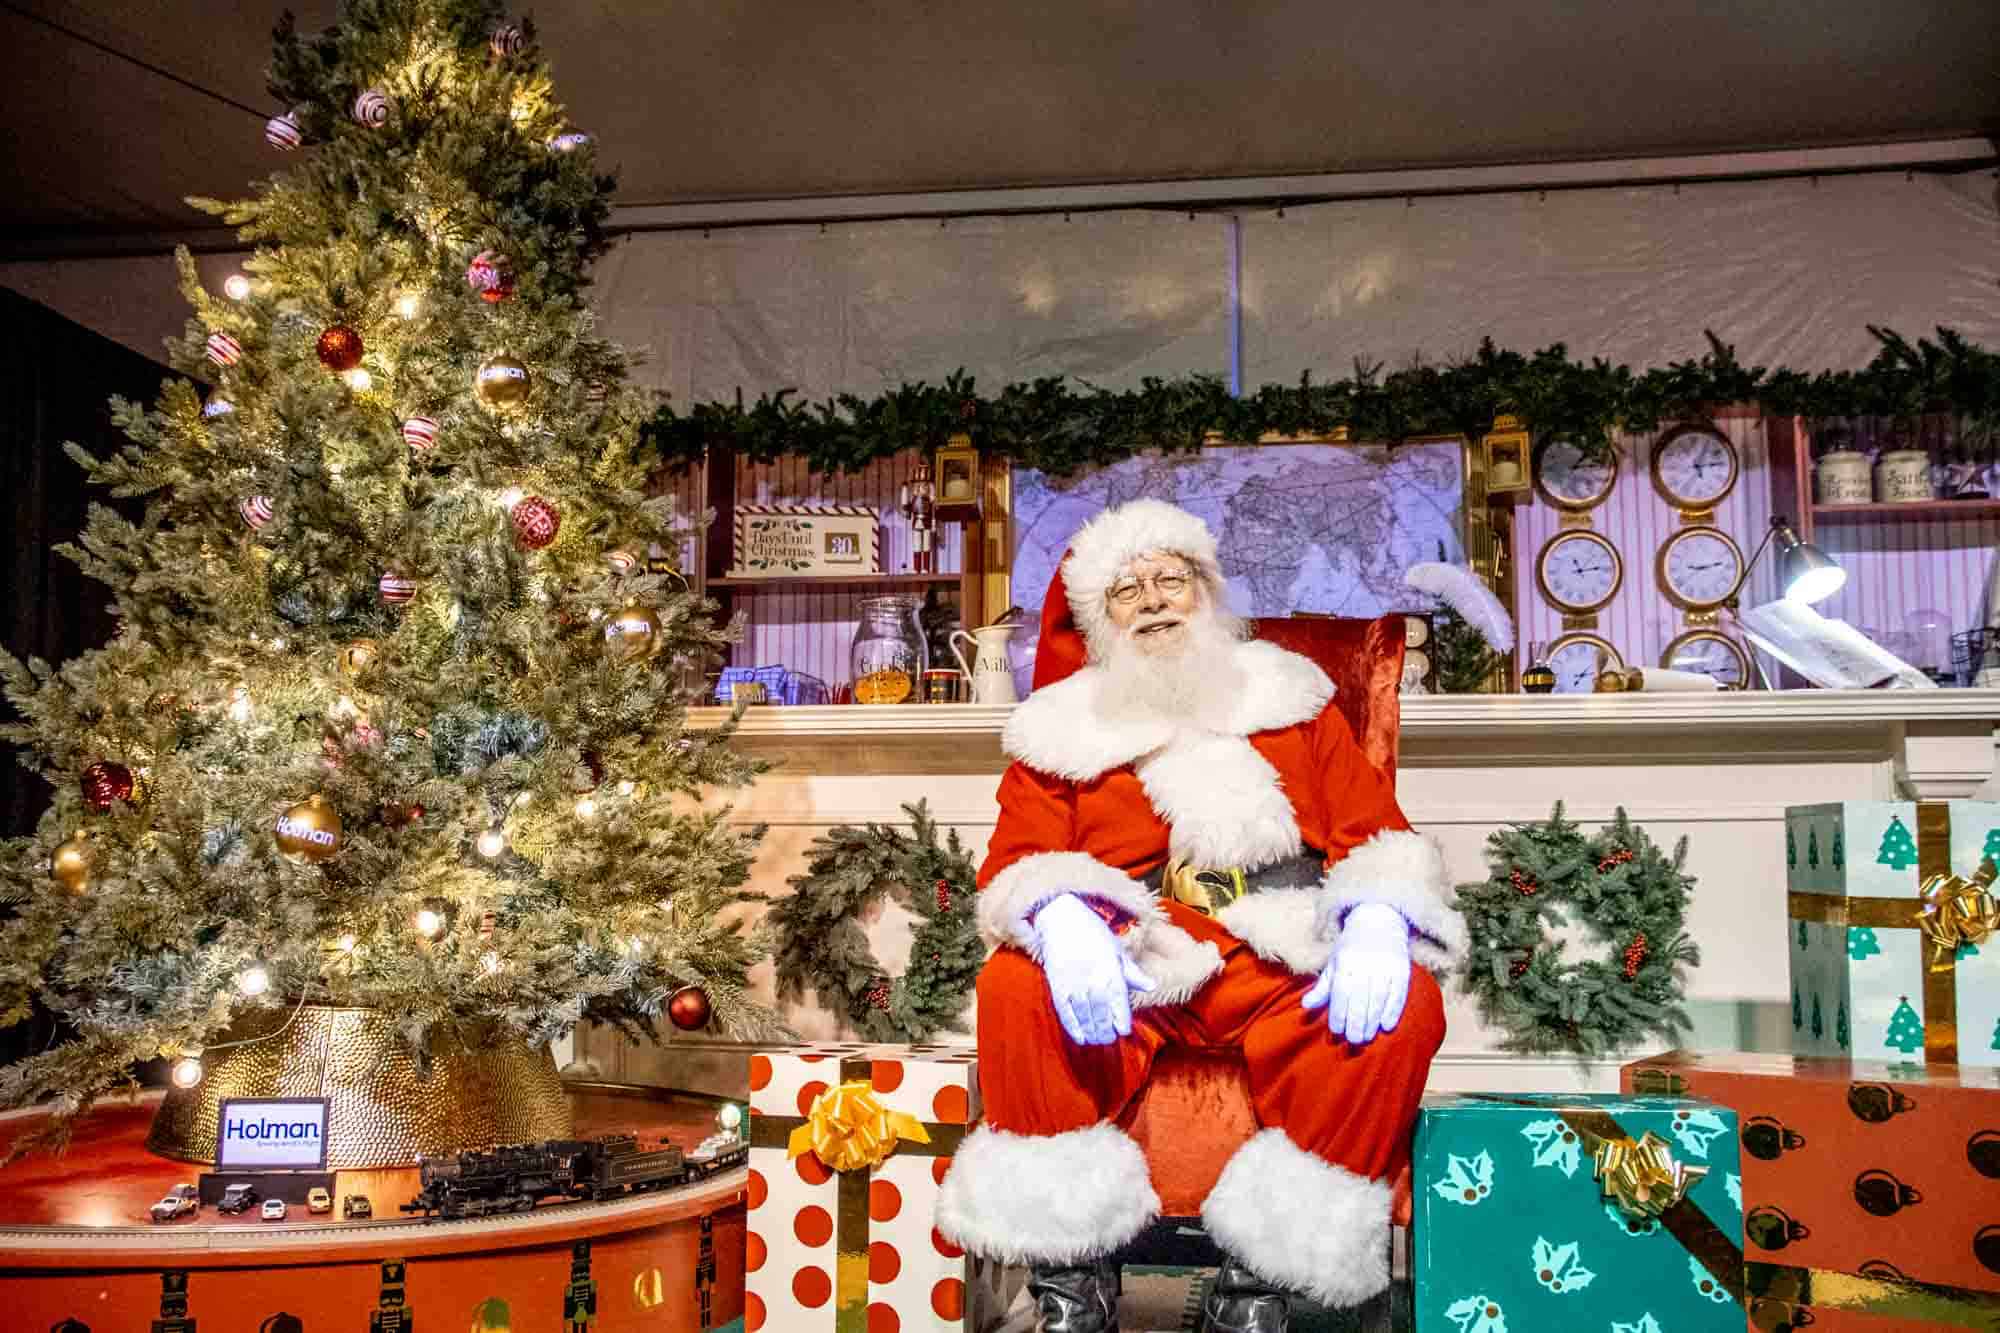 Santa sitting among presents and a Christmas tree.